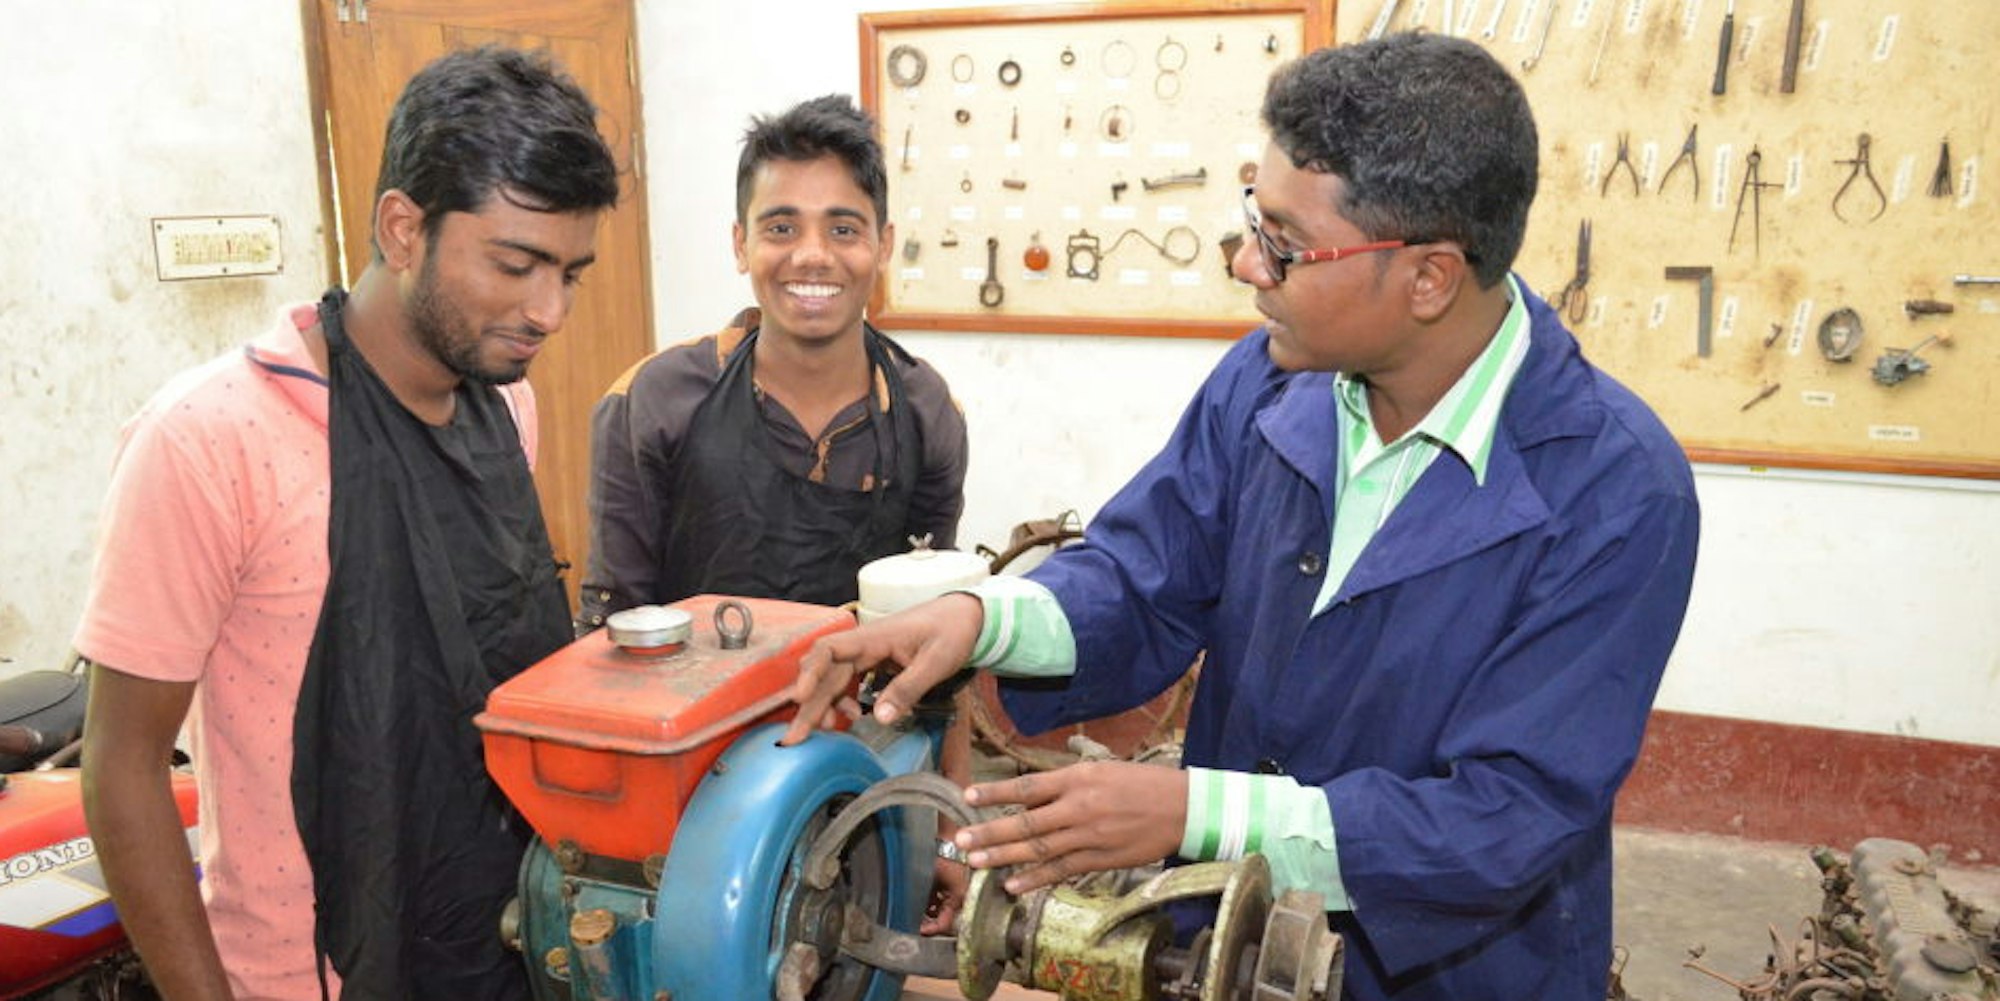 Hilfe zur Selbsthilfe: Männer erhalten Unterricht und Starthilfe zum Aufbau von kleinen Werkstätten.